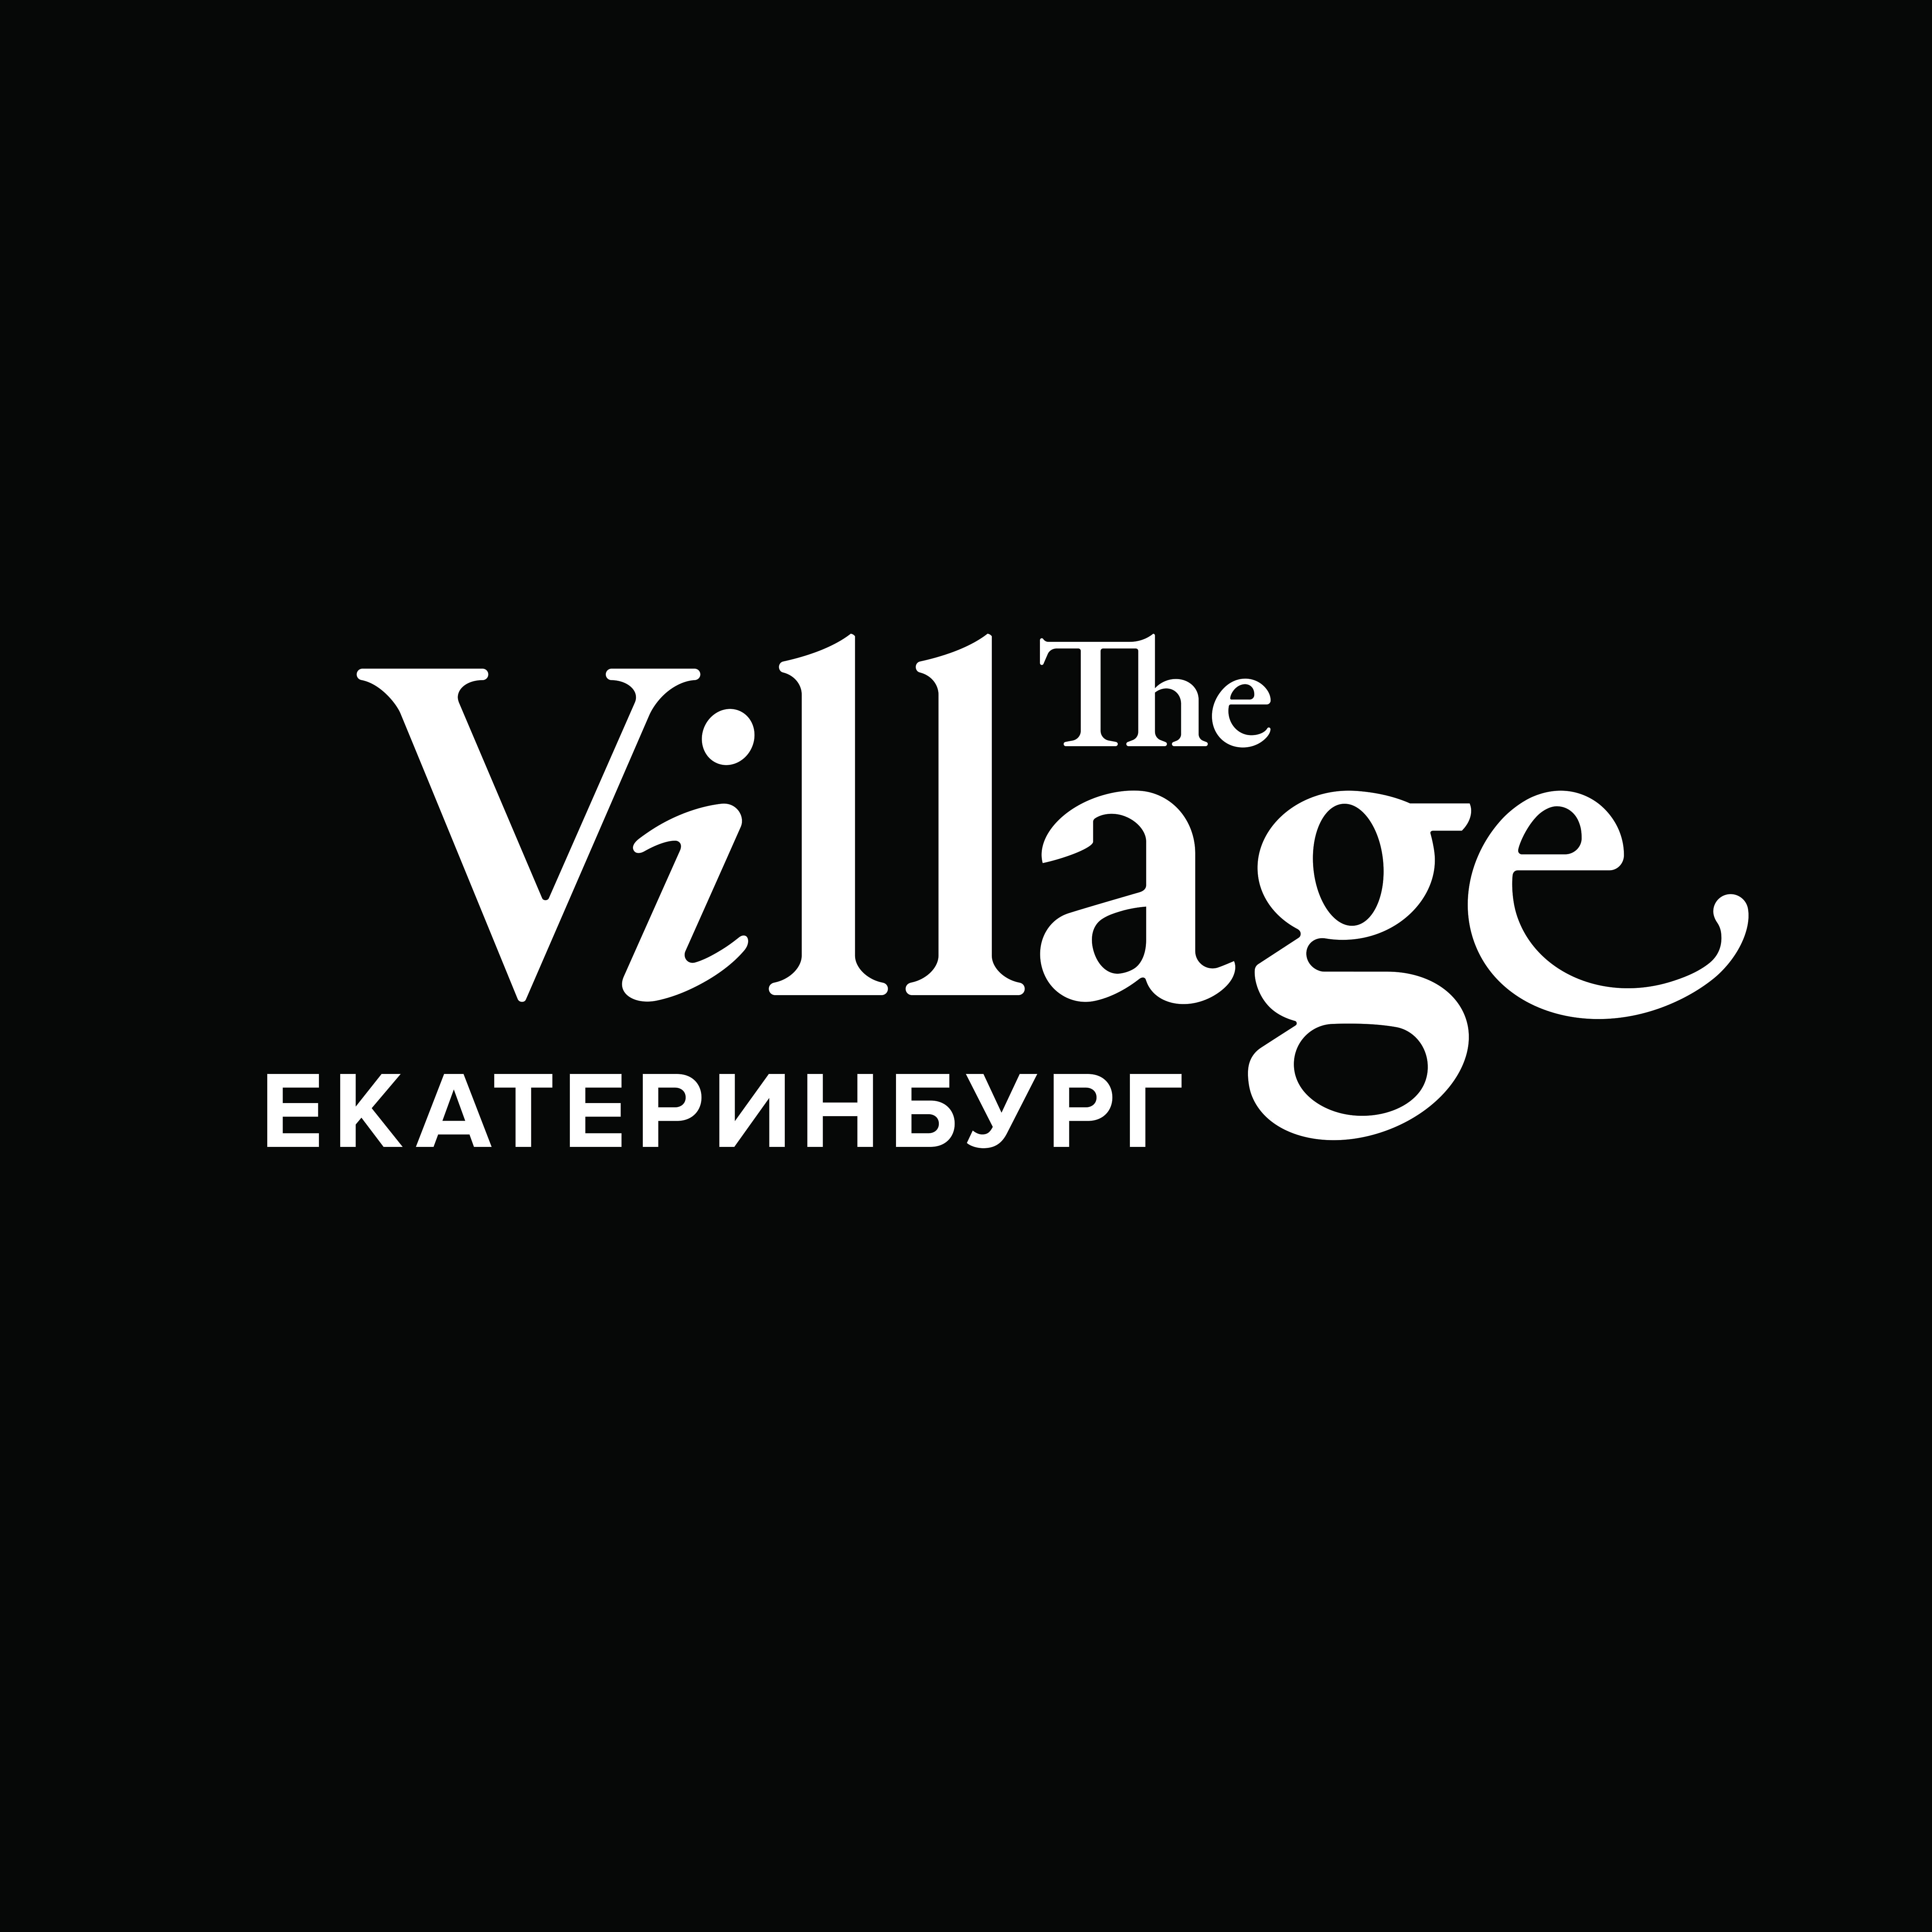 the-village ekb